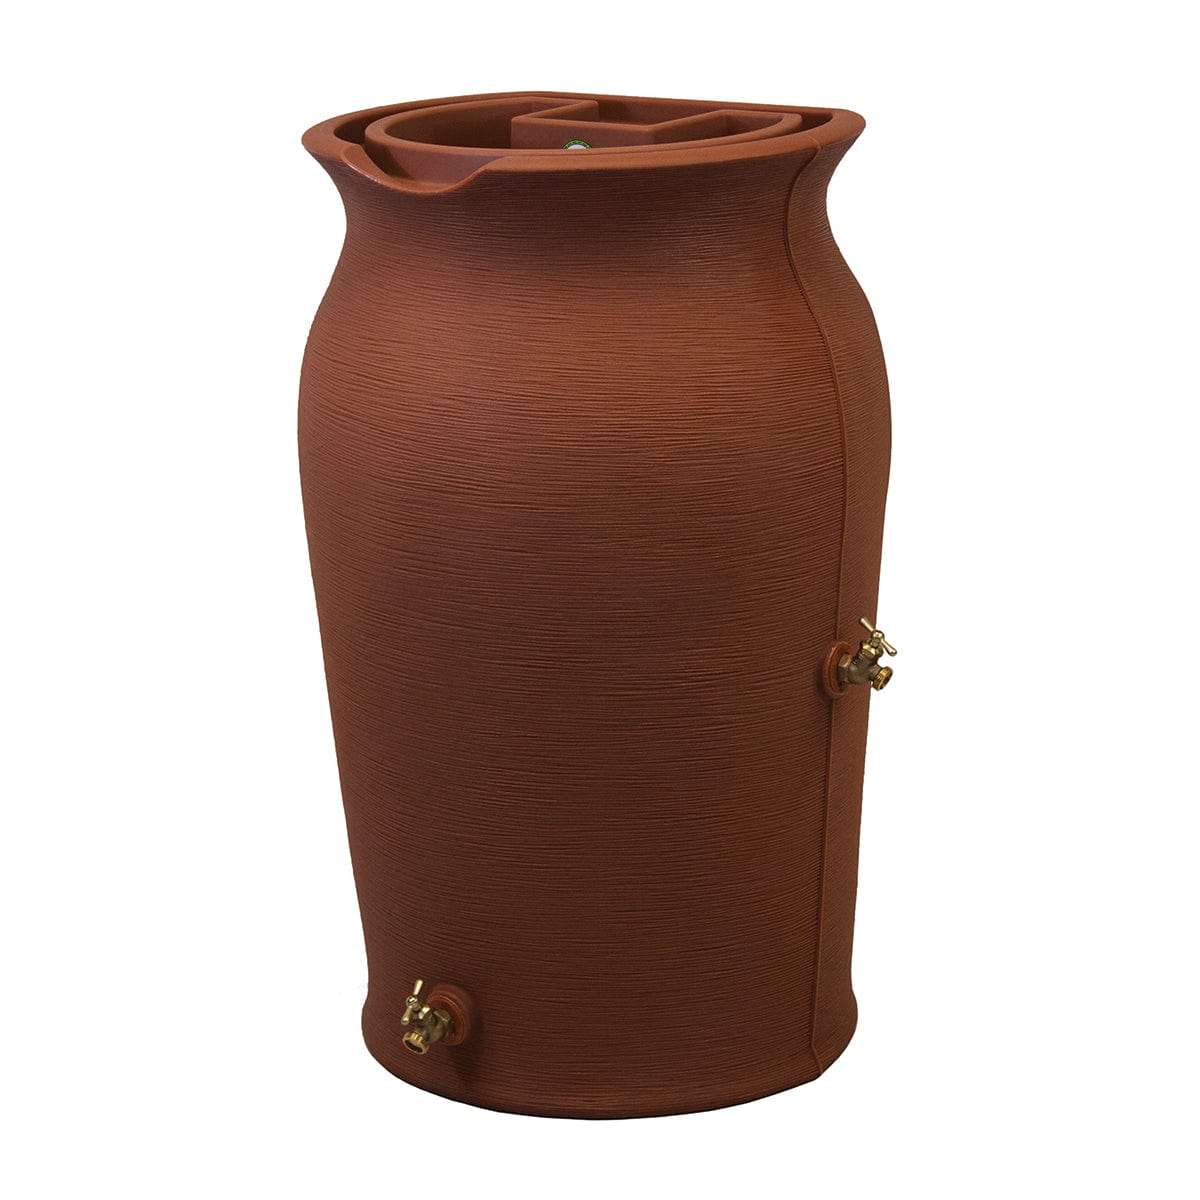 Impressions Amphora 50 Gallon Rain Barrel